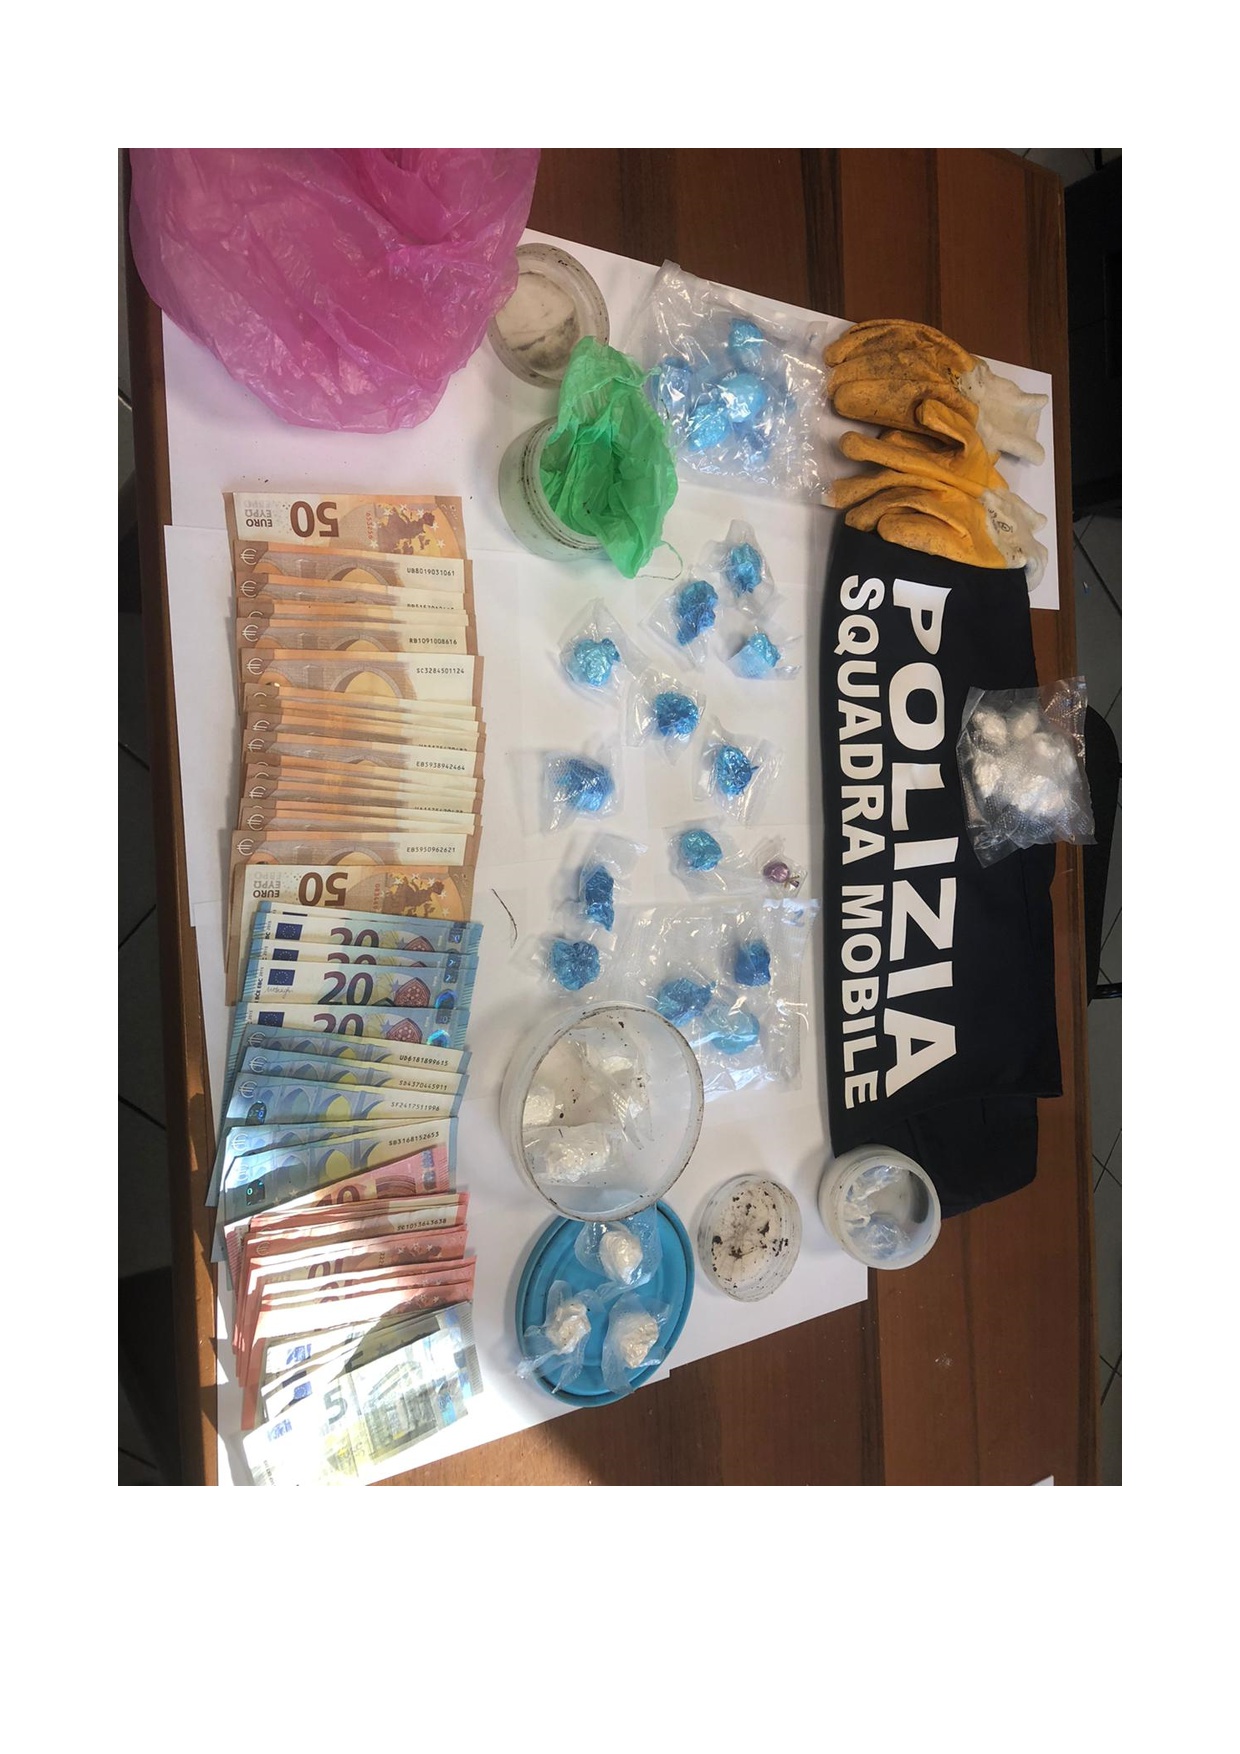 La Polizia di Stato arresta un albanese con quasi 3 etti di cocaina purissima. La teneva nascosta sotto terra.